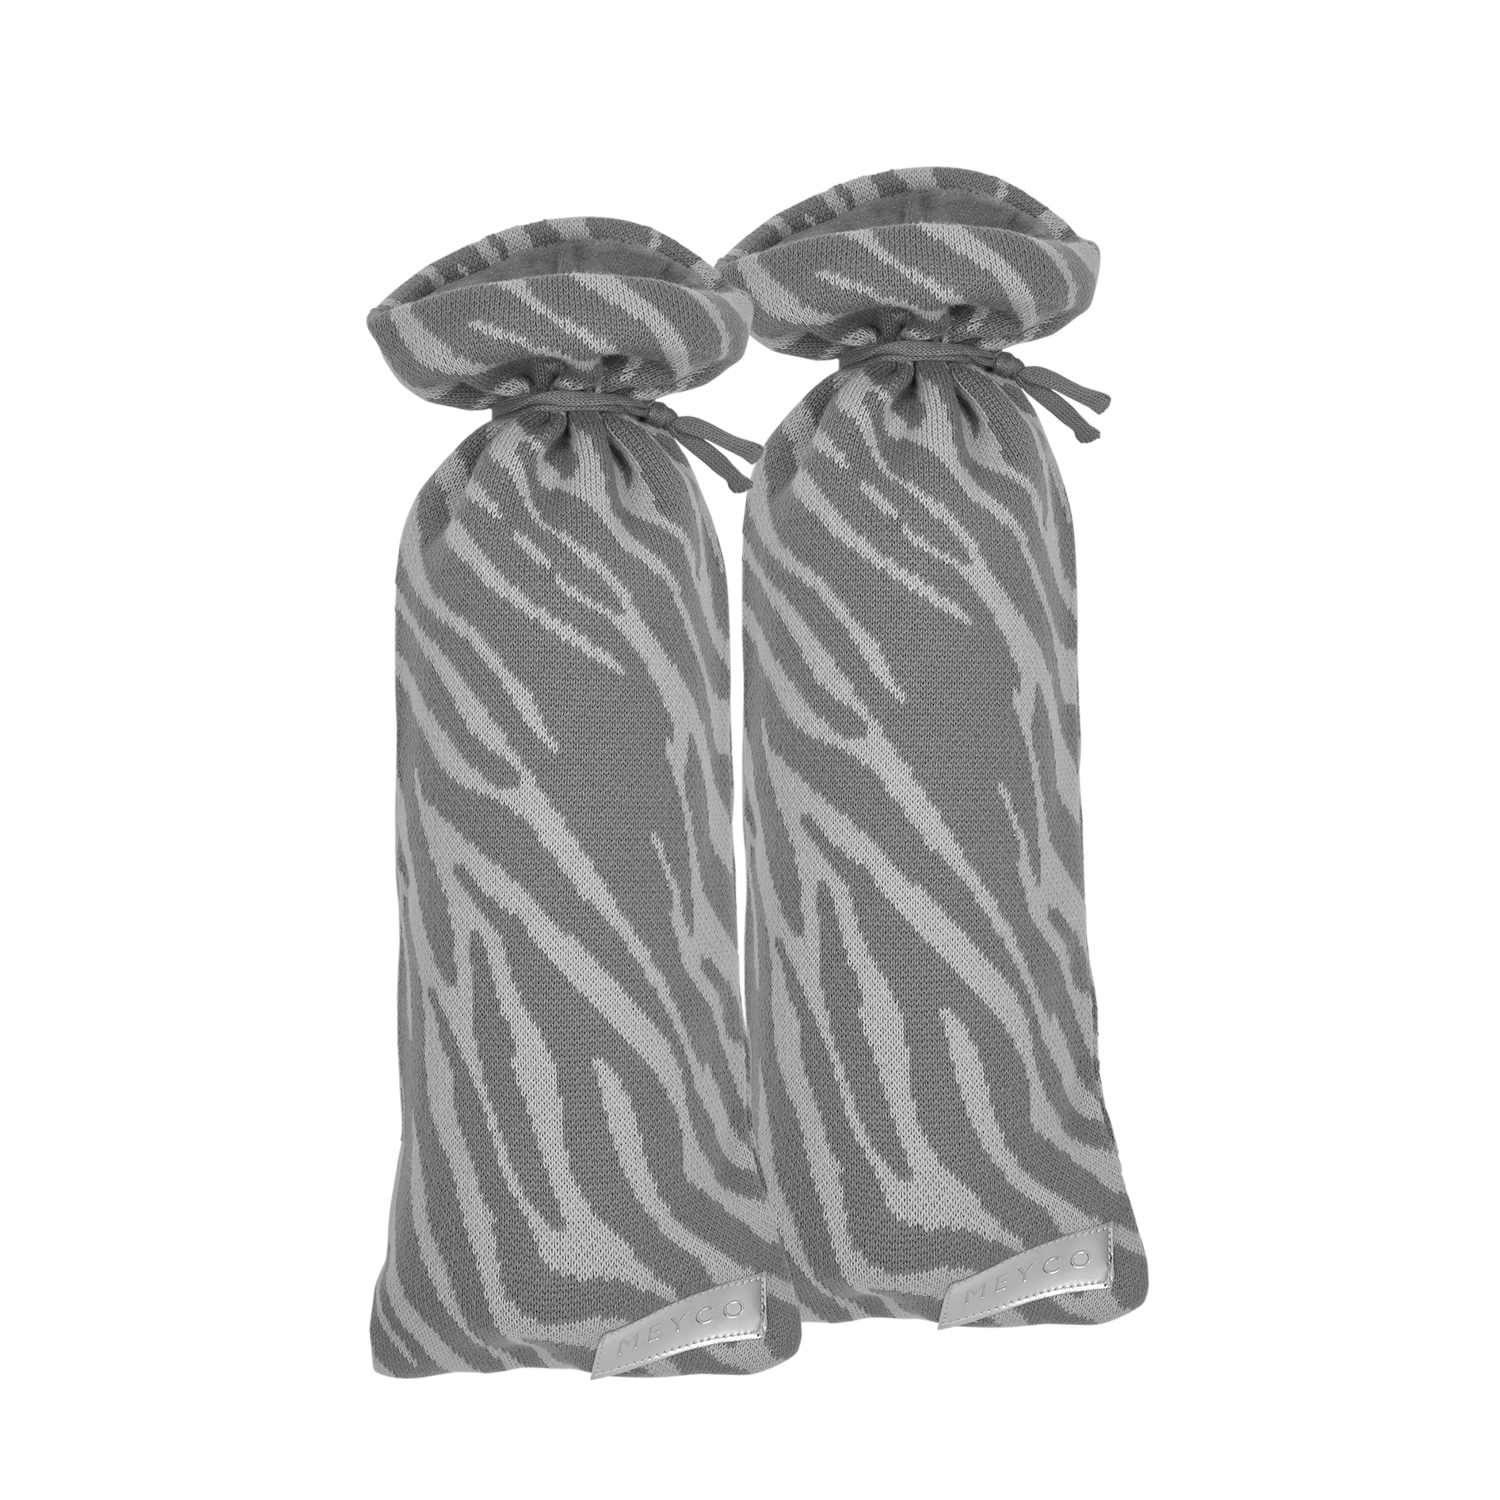 Kruikenzak 2-pack Zebra - grey